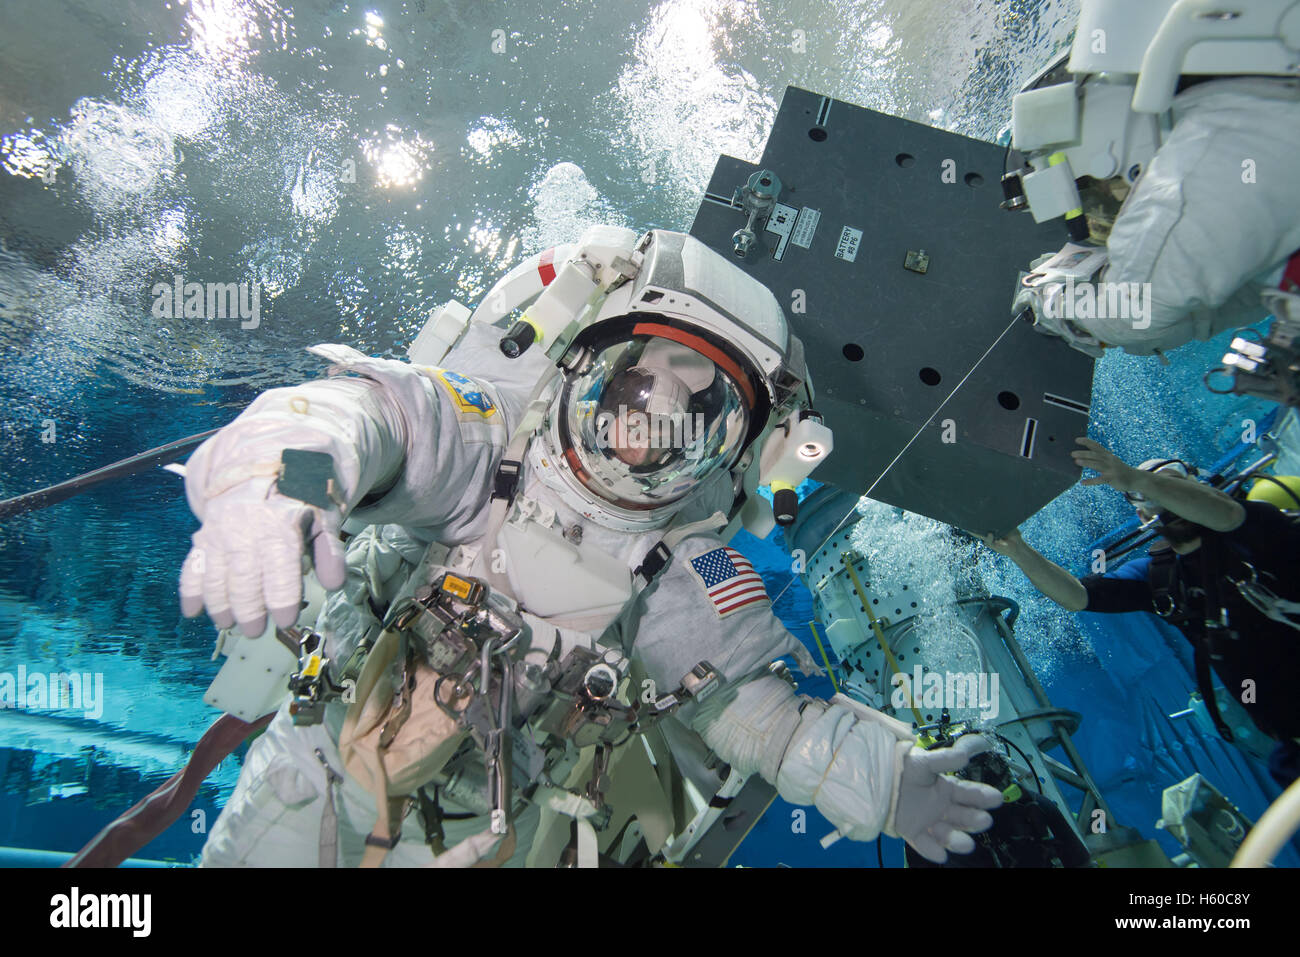 La NASA Stazione Spaziale Internazionale spedizione 50/51 Soyuz MS-03 membro di equipaggio astronauta americano Peggy Whitson galleggia sott'acqua in una tuta spaziale per la ISS EVA spacewalk training di manutenzione al Sonny Carter Training Facility galleggiabilità neutra Laboratorio Gennaio 12, 2016 a Houston, Texas. Foto Stock